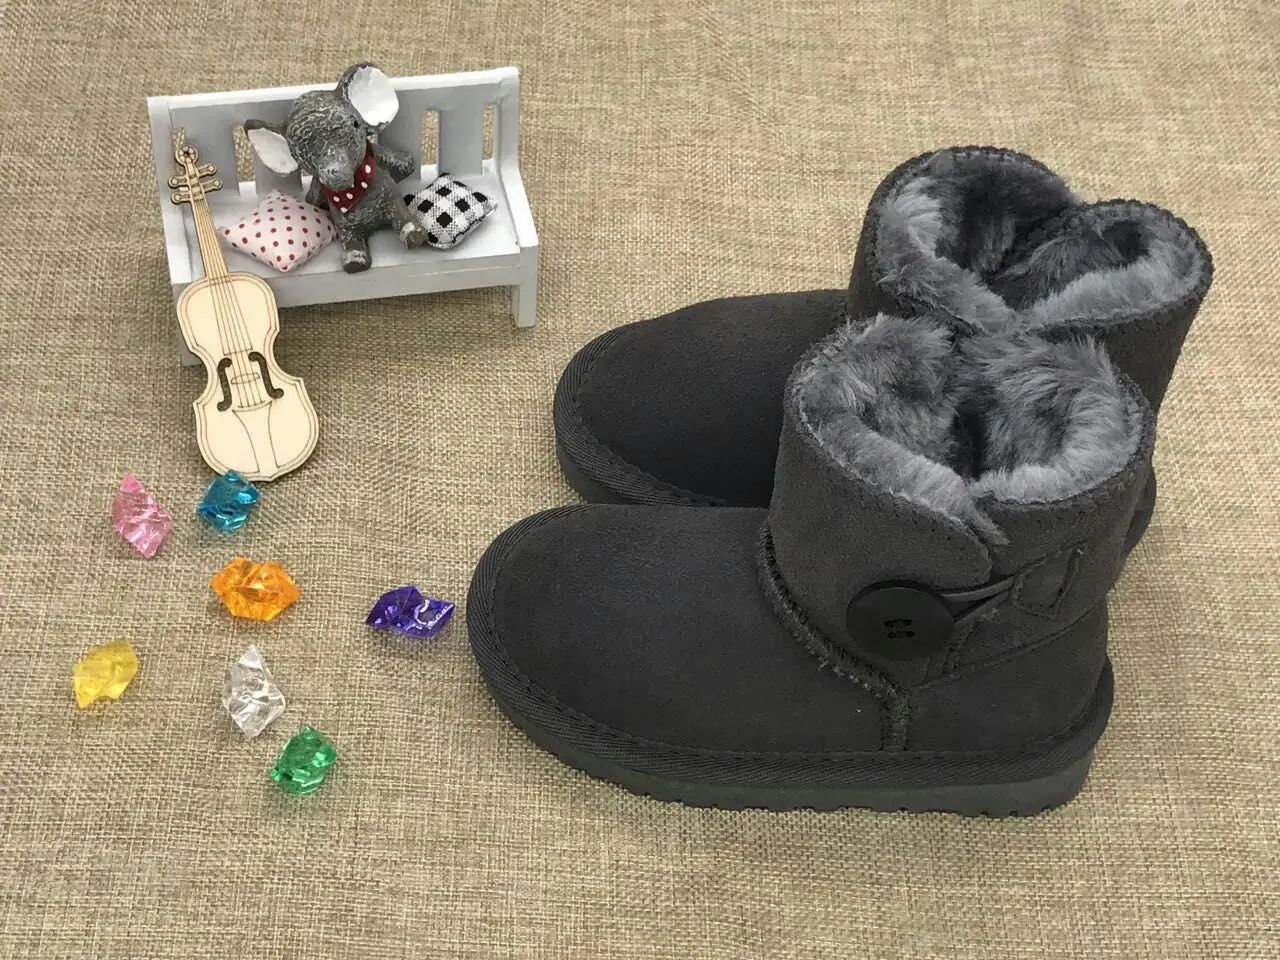 Австралийская брендовая плюшевая детская обувь для мальчиков; зимние модные детские зимние ботинки для девочек; Теплые ботильоны из натуральной кожи с мехом для маленьких мальчиков